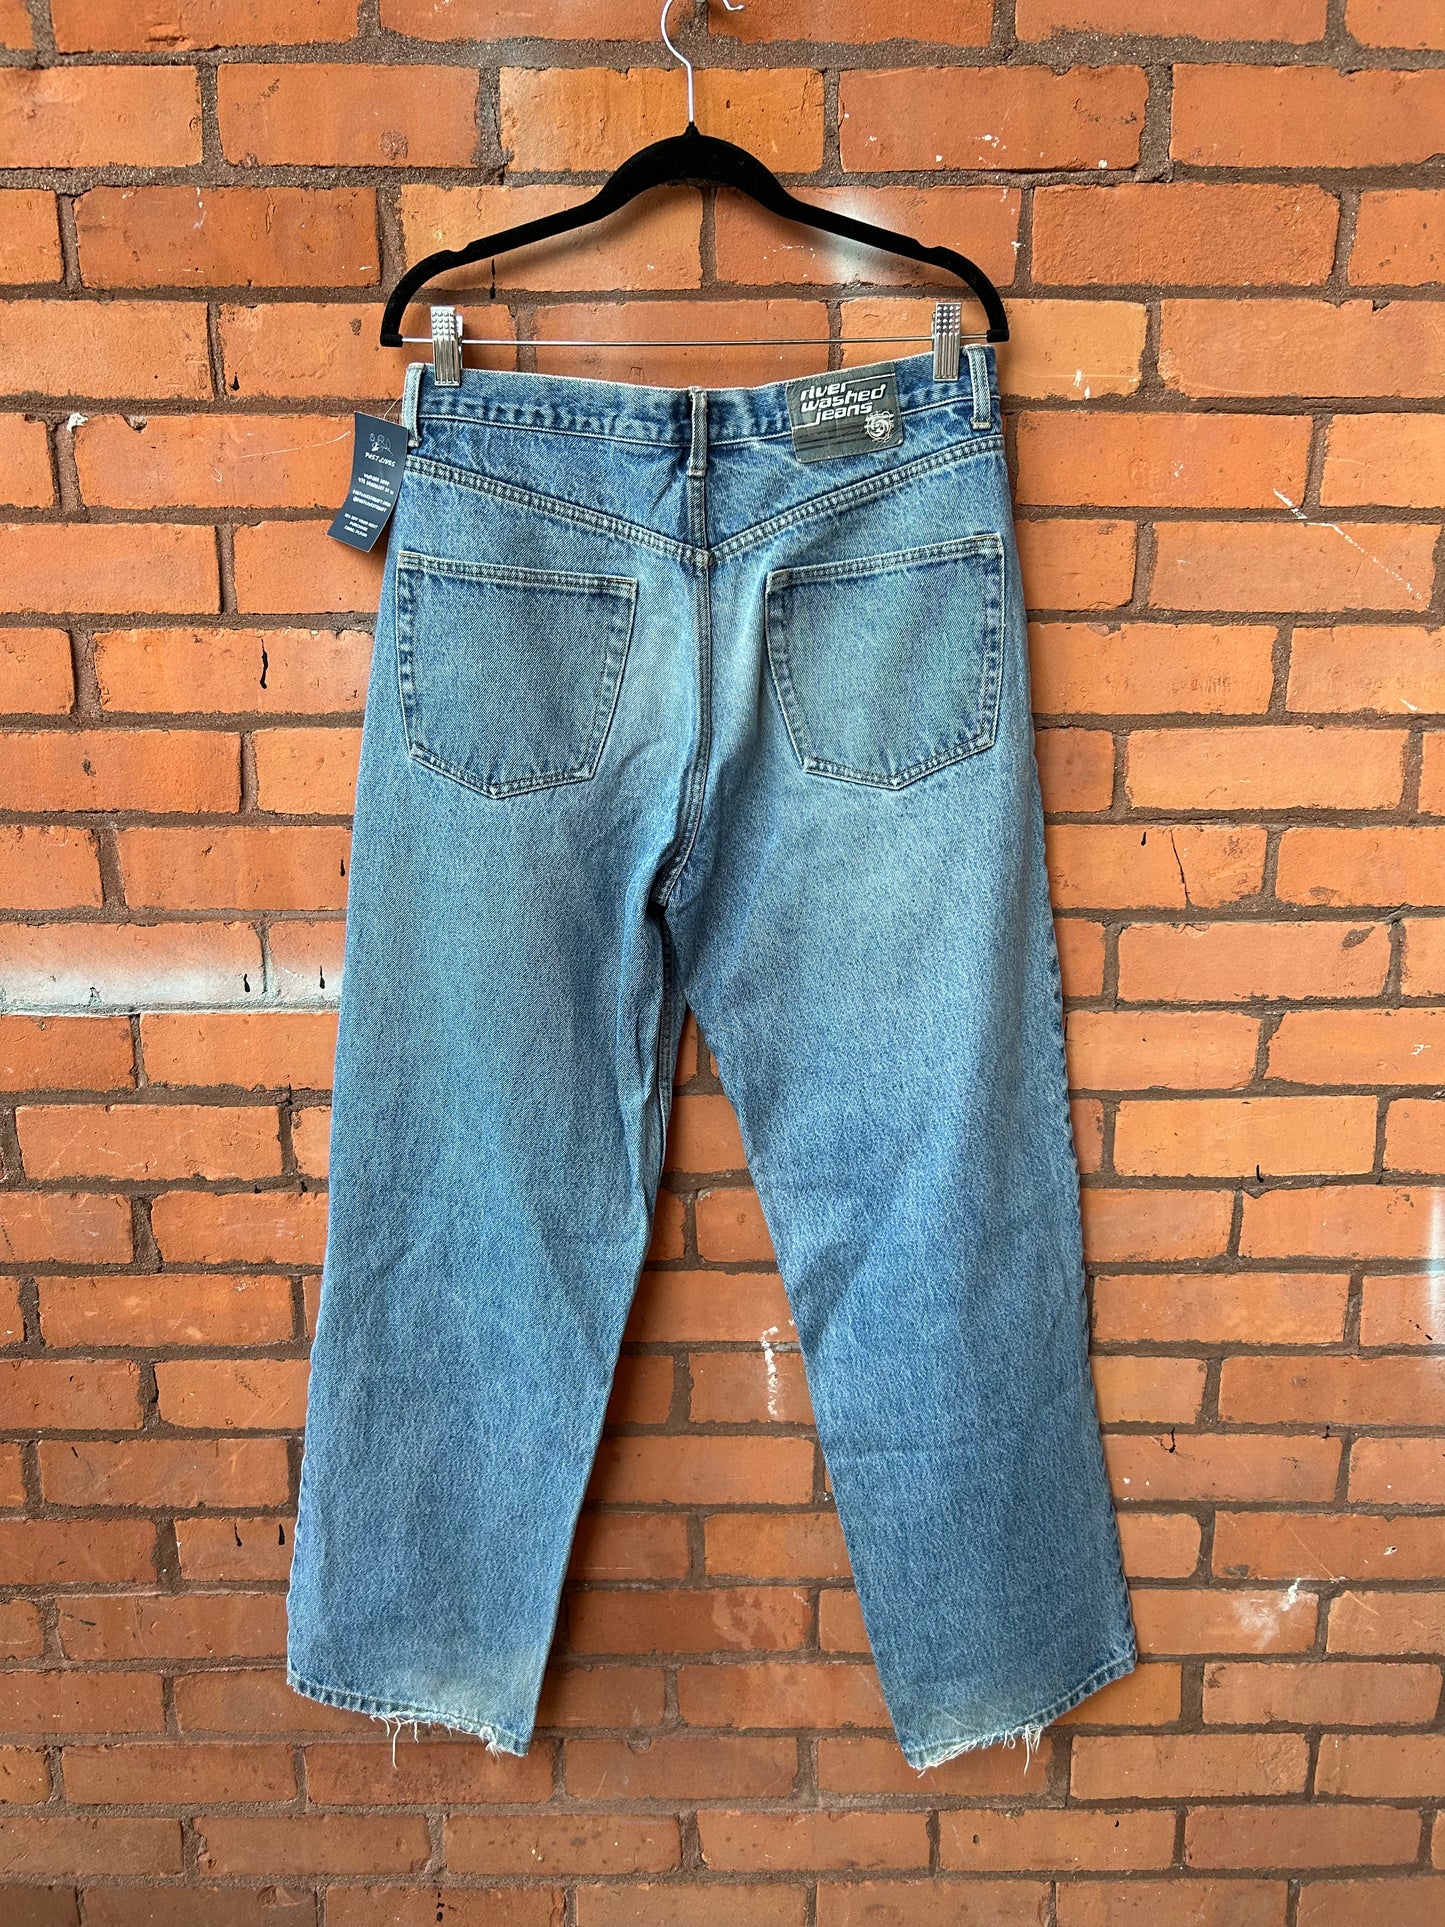 90’s Vintage Medium Wash Straight Leg Jeans / 32 Waist